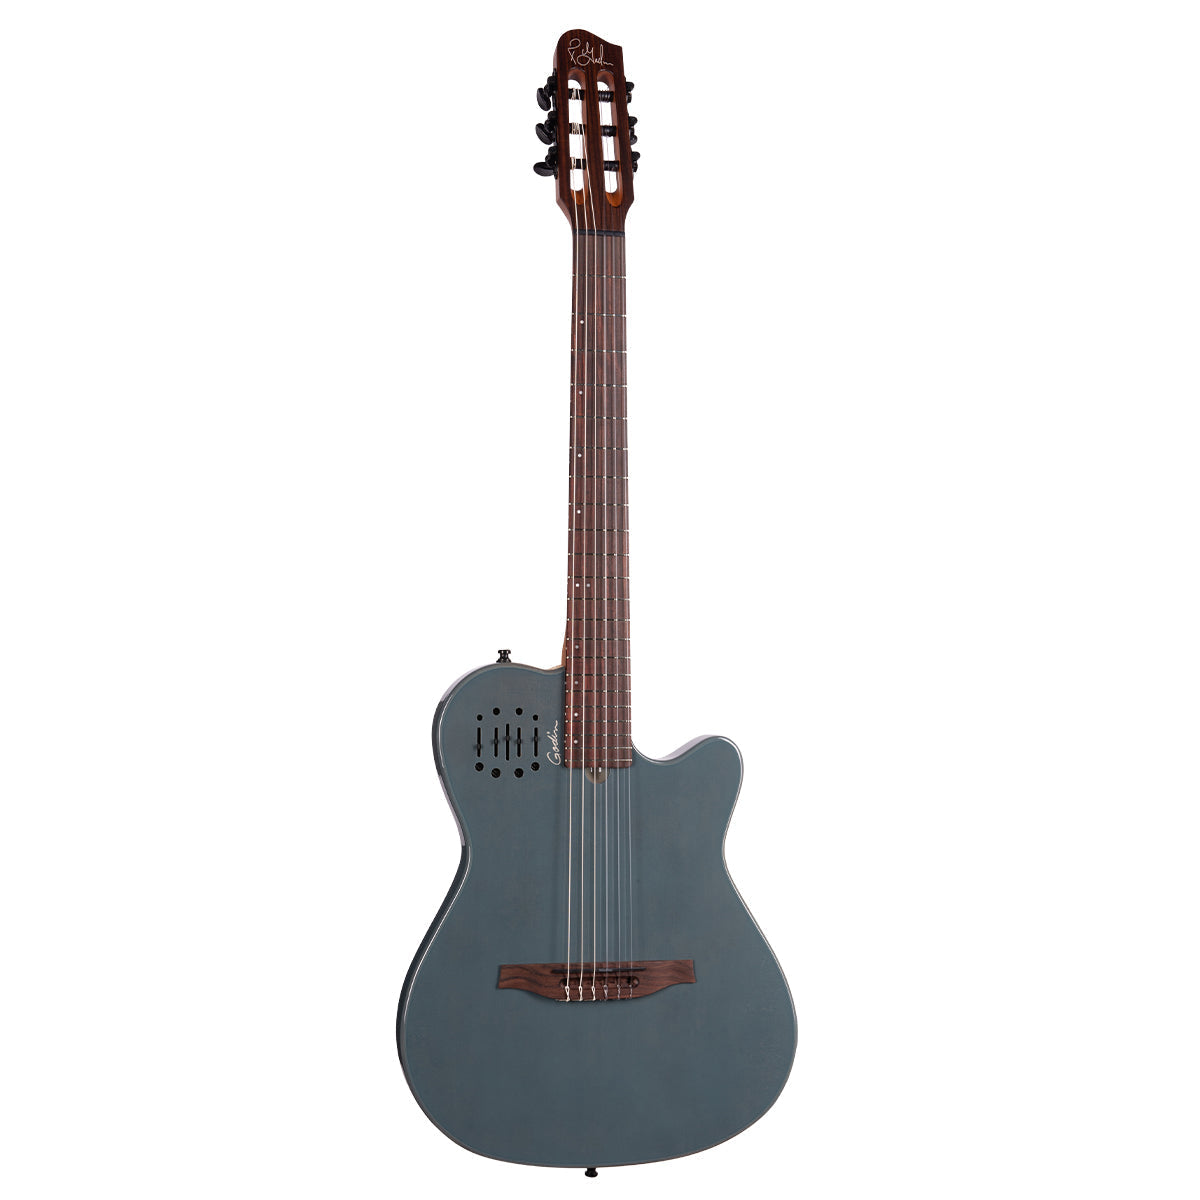 Godin Multiac Mundial Electric Guitar ~ Arctik Blue, Electric Guitar for sale at Richards Guitars.